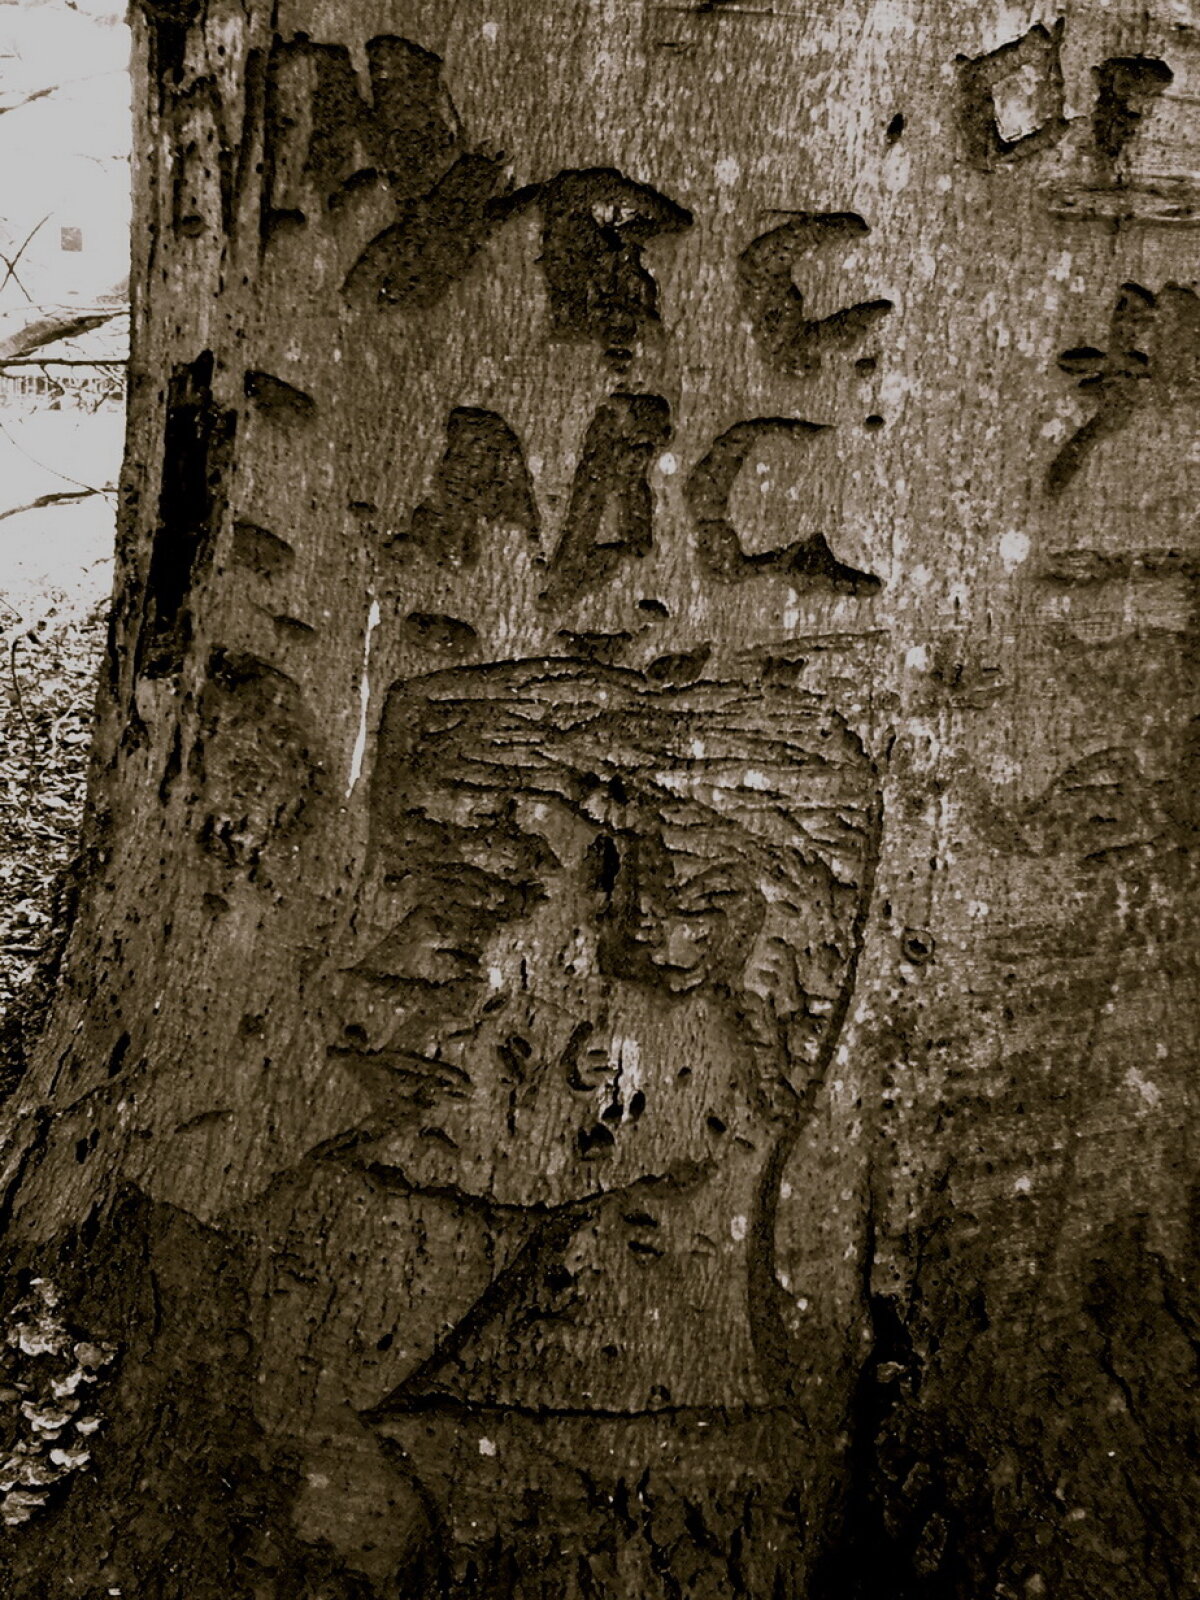 FOTO Parcul cu cele mai ciudate mesaje scrise pe copaci